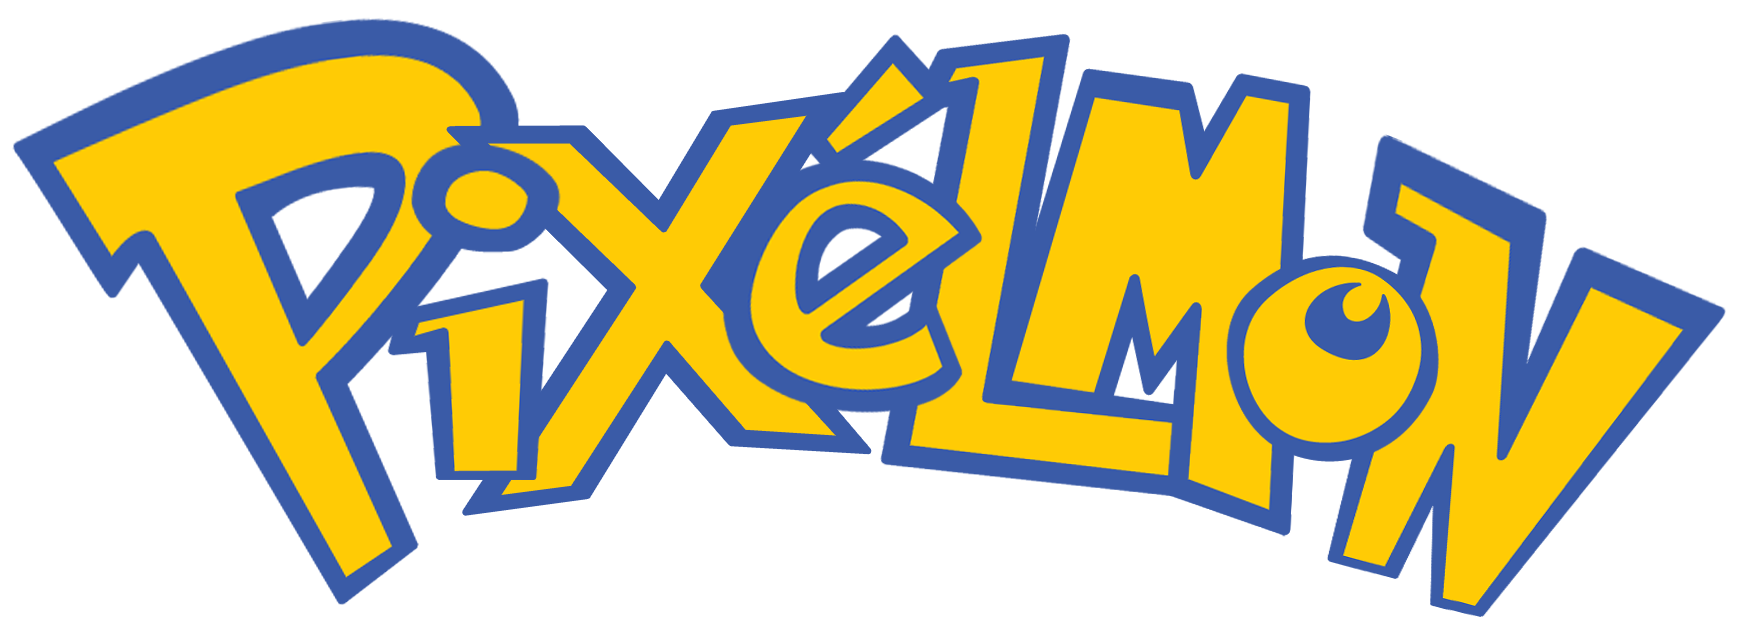 Pixelmon pokemon logo png #1440